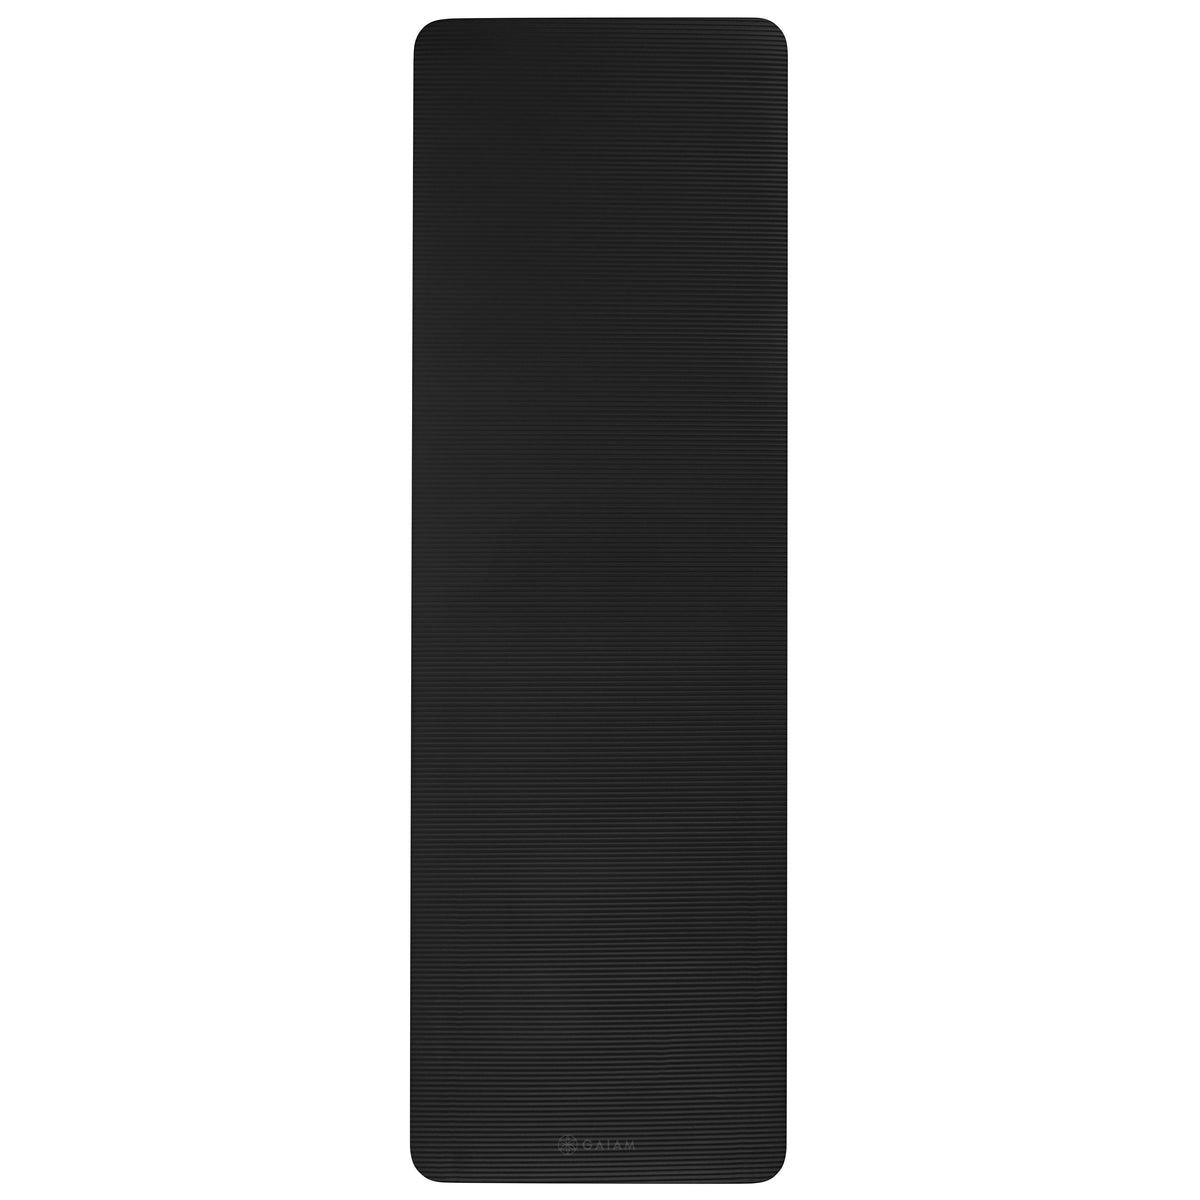 Gaiam Fitness Mat (10mm) Black